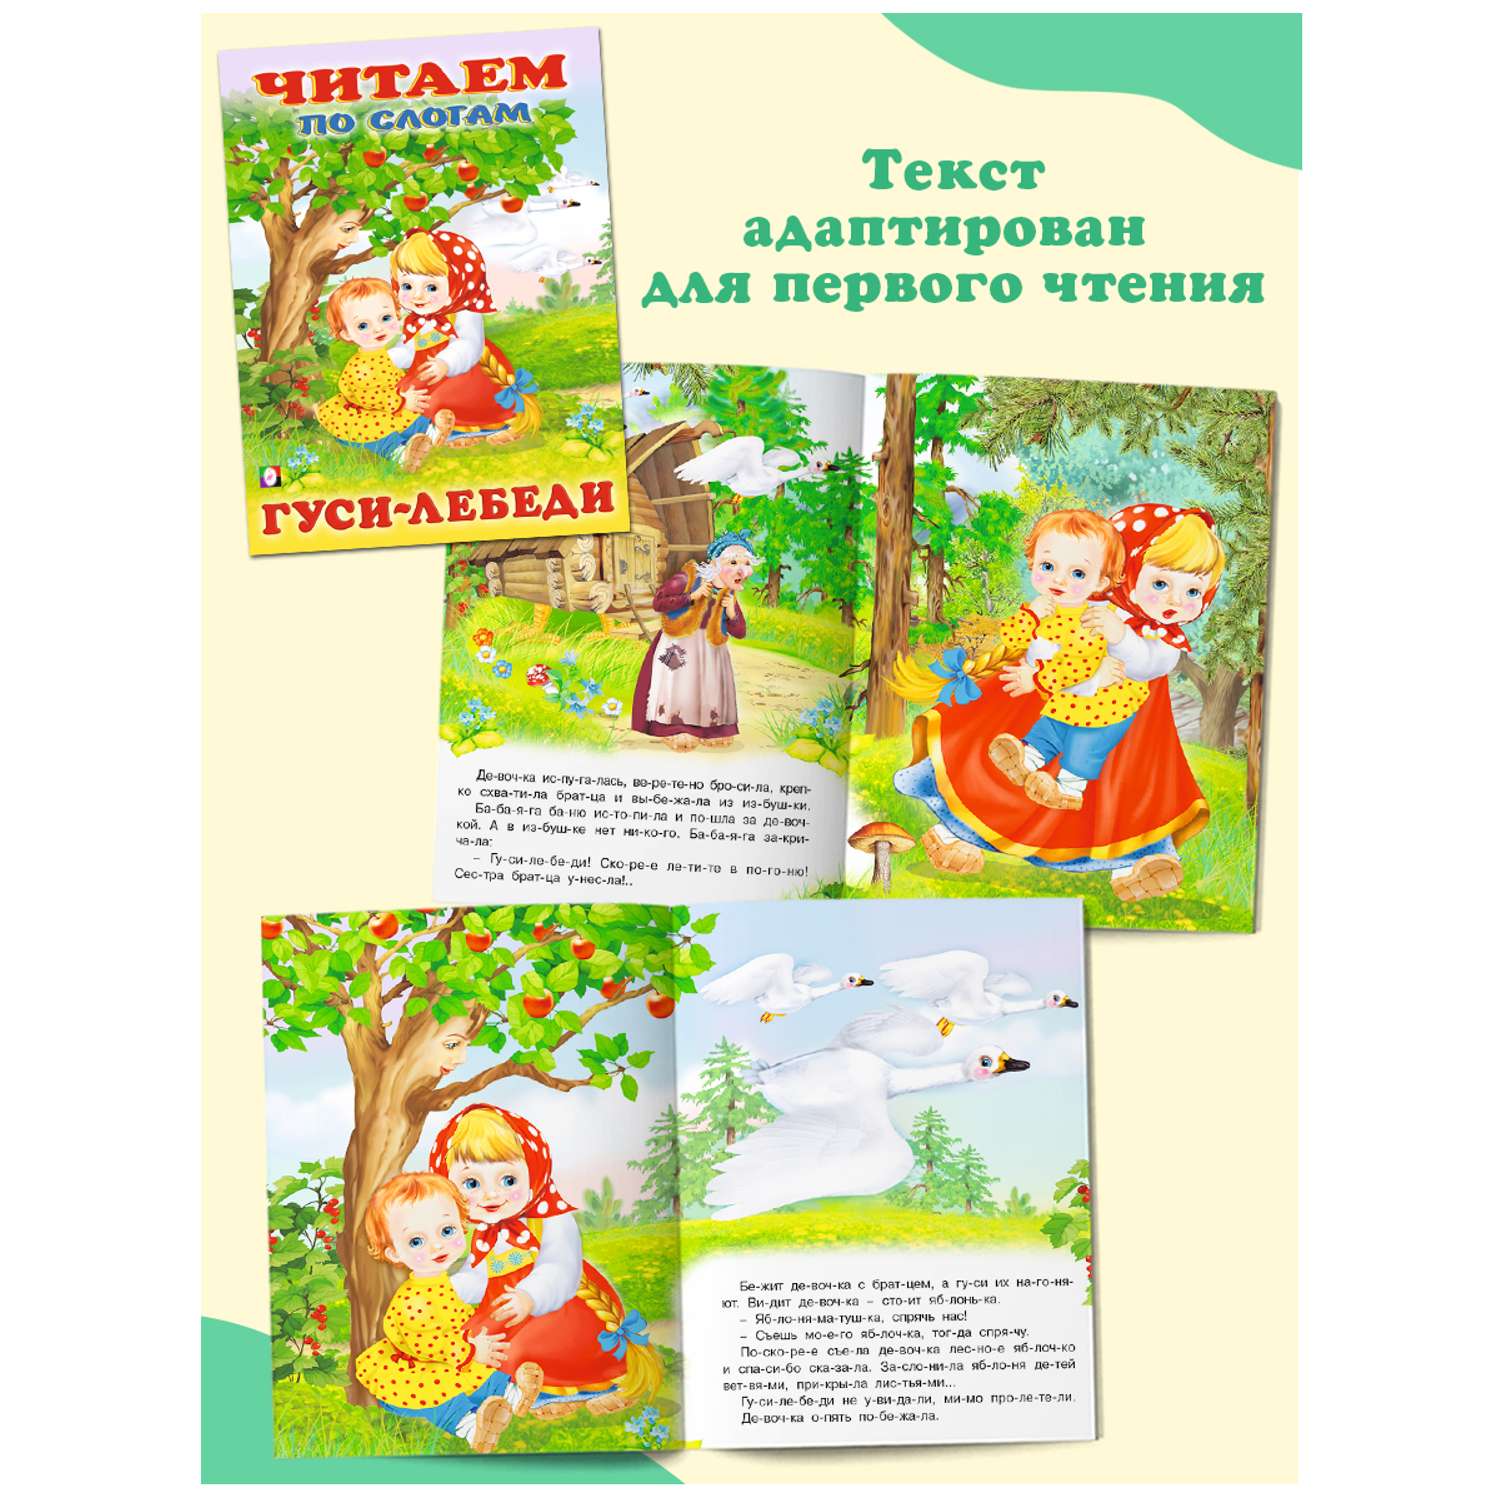 Комплект книг Фламинго Читаем по слогам Книги для малышей Русские народные и зарубежные сказки набор из 9 шт - фото 4